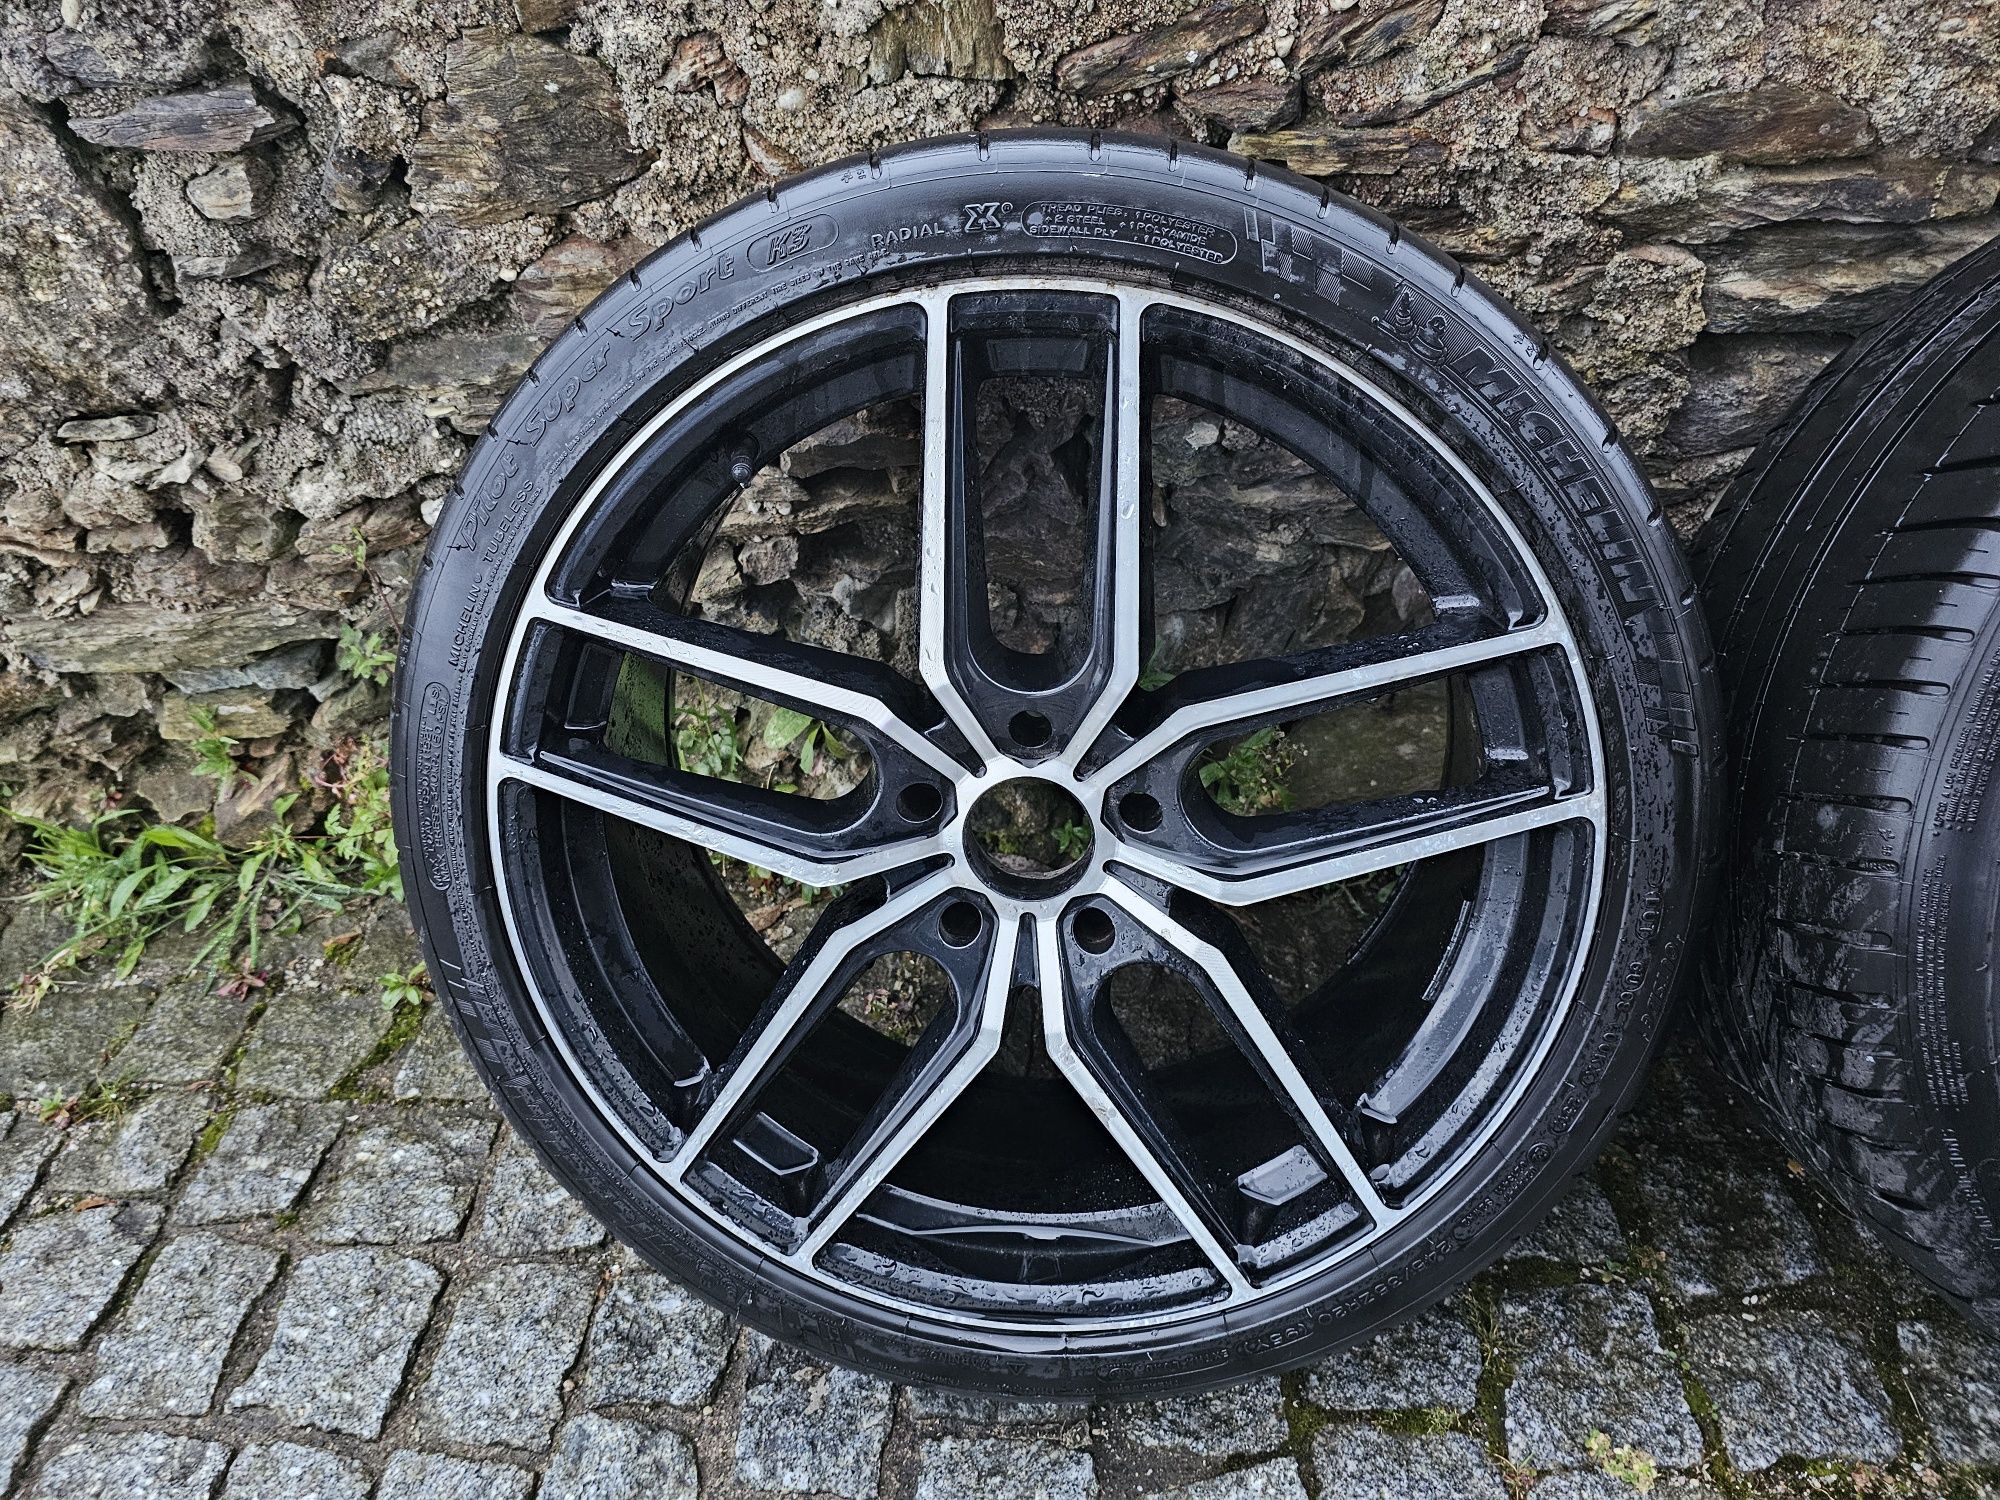 Jantes 20 5×120 BMW com pneus Michelin Pilot Sport
Possível envio para